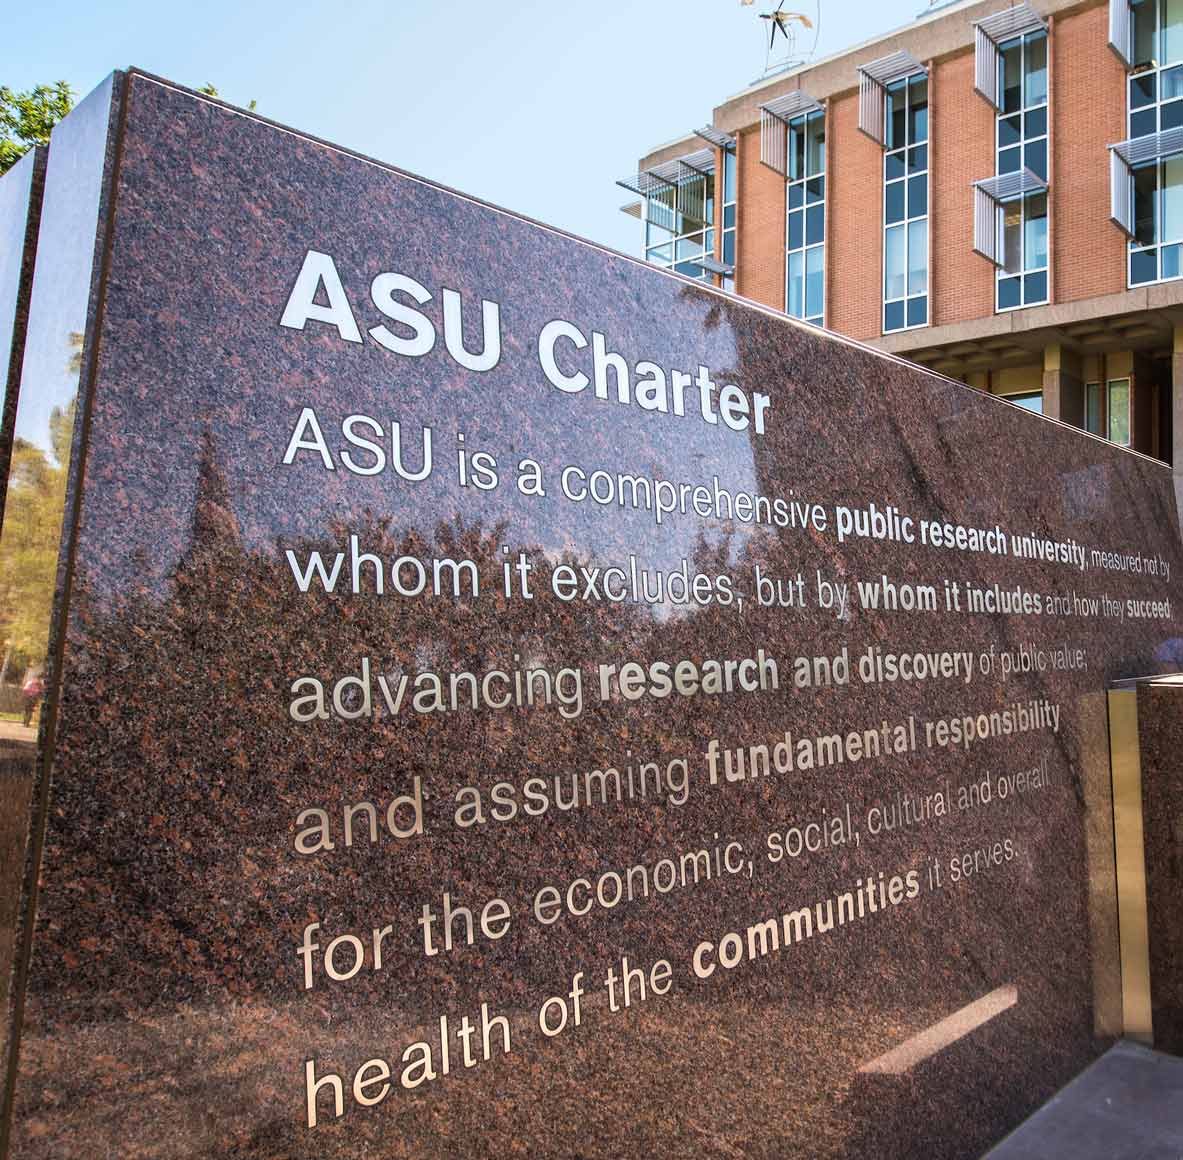 ASU Charter